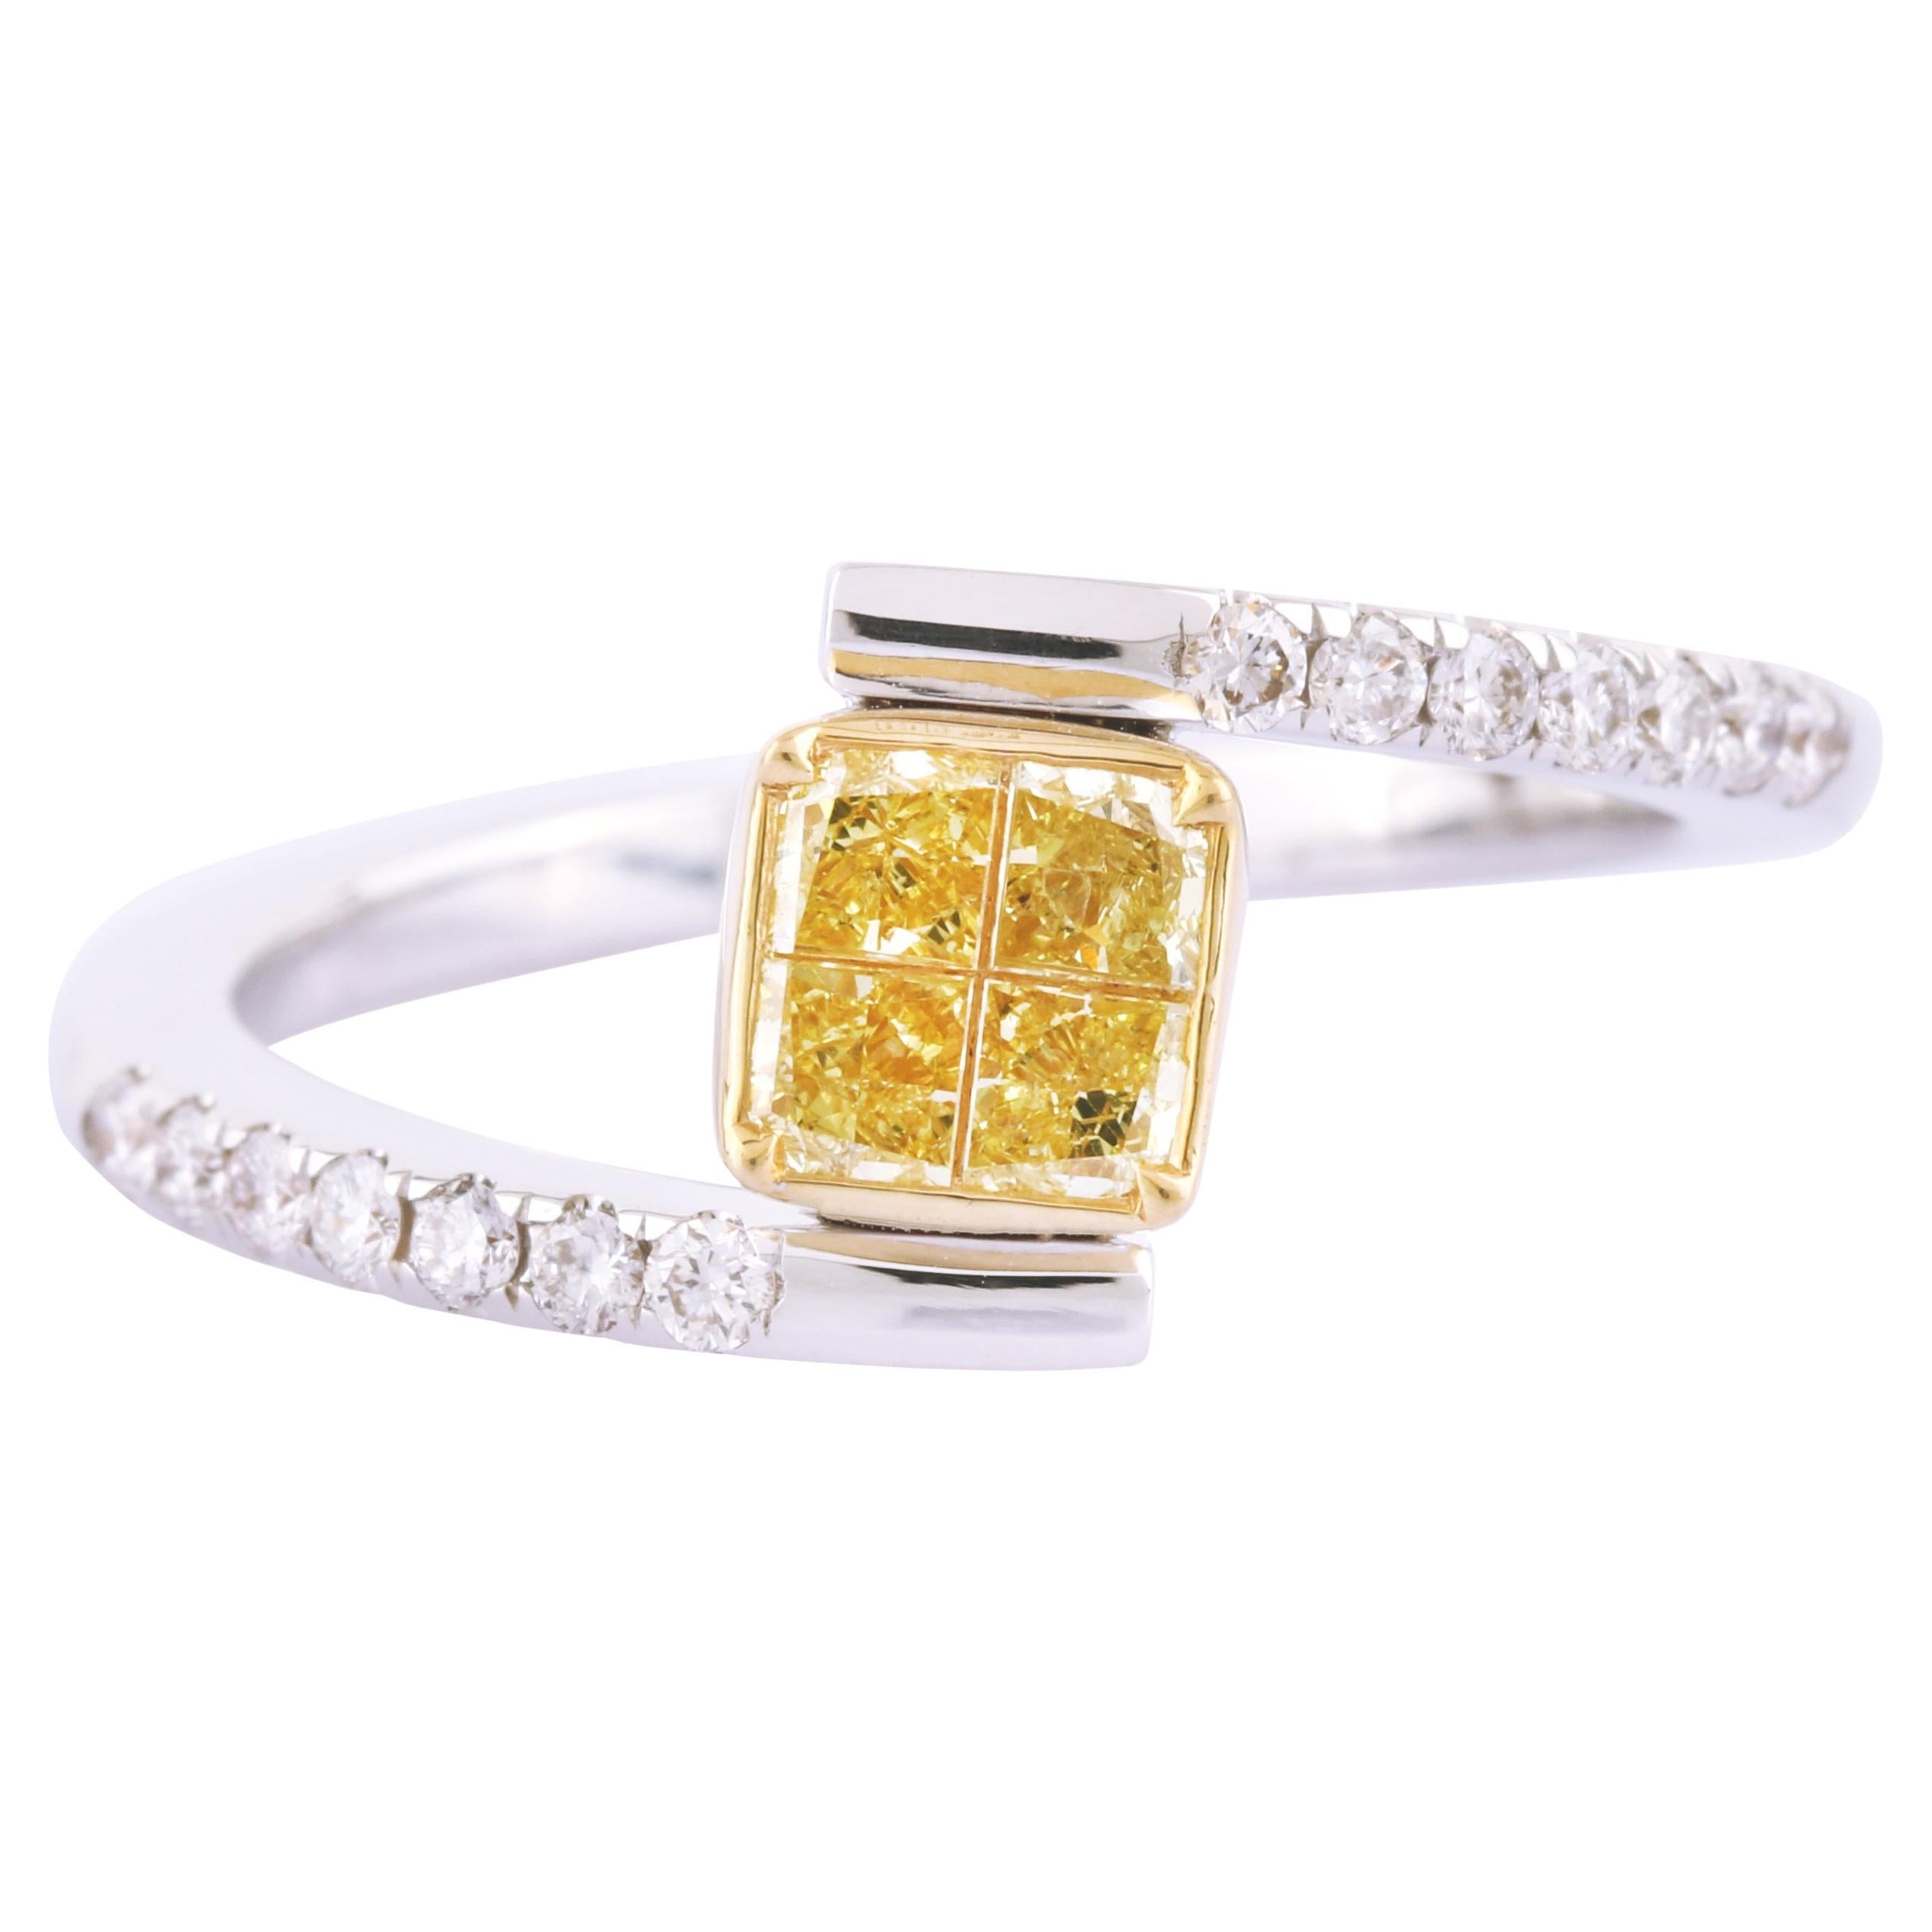 Bague en or 18 carats sertie d'un diamant jaune et blanc « Image-Set »